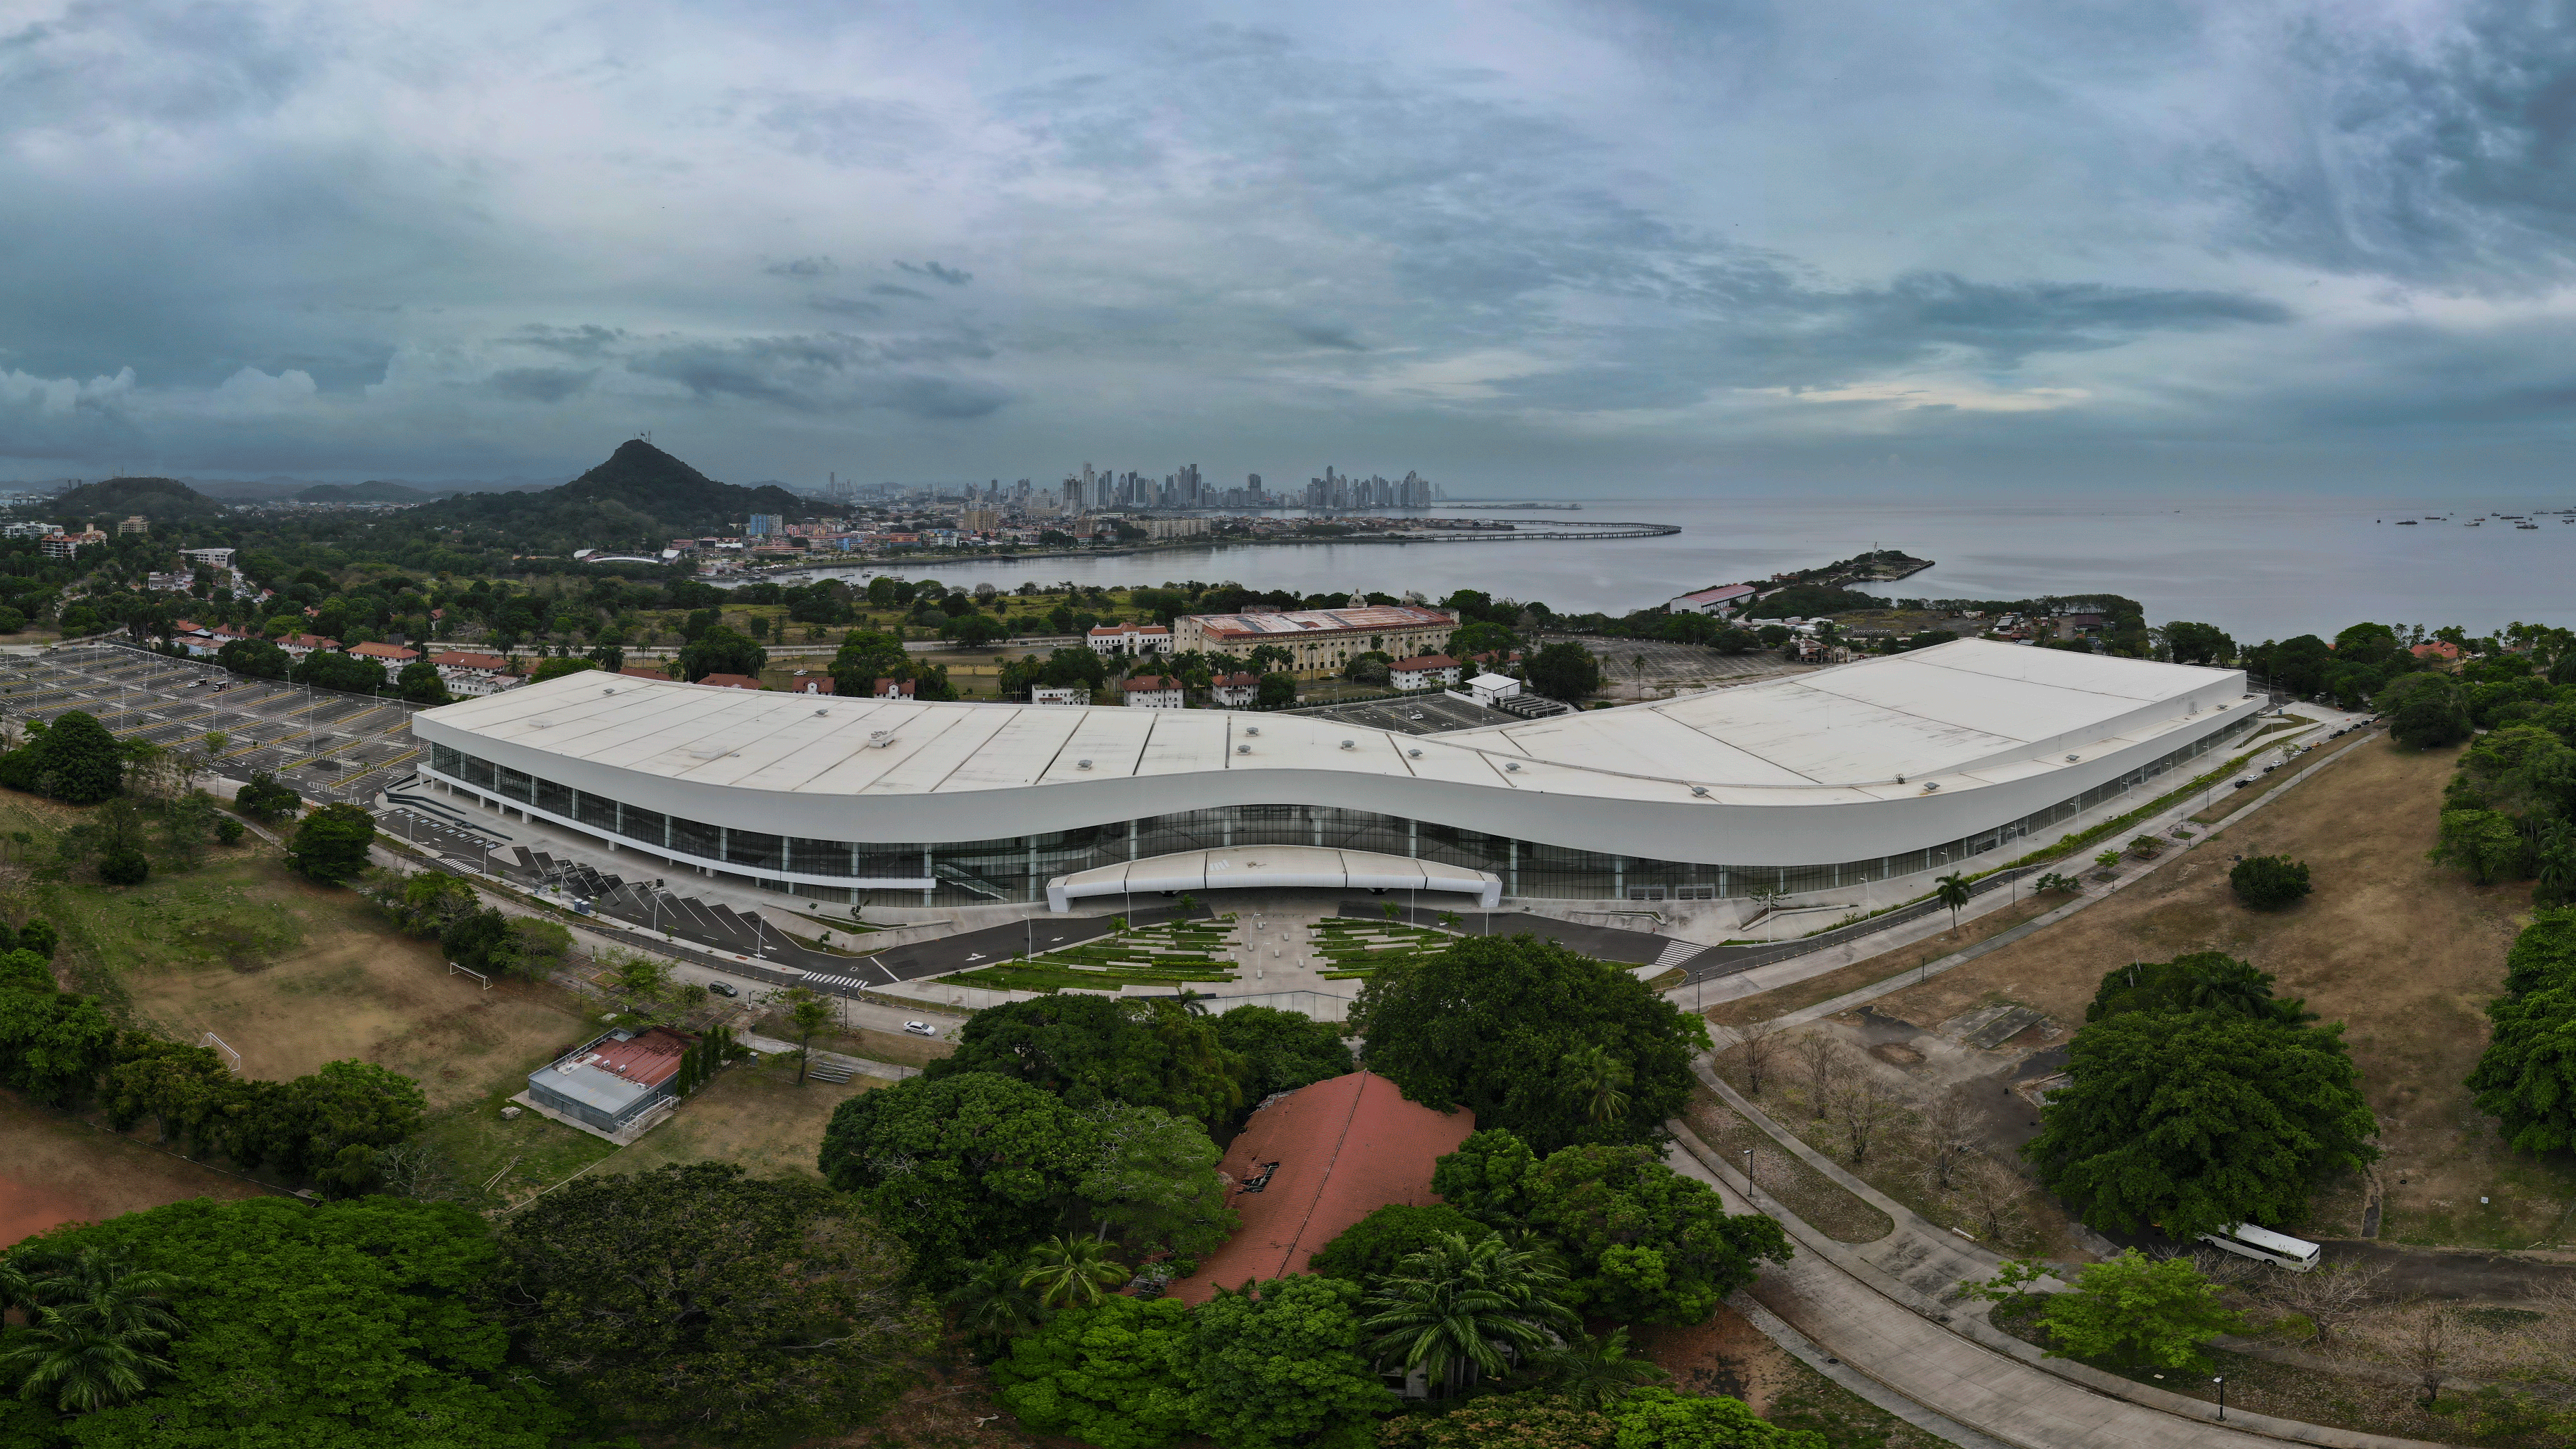 Centro de convenciones de Panamá. Otro grande gestionado por Ecostruxure